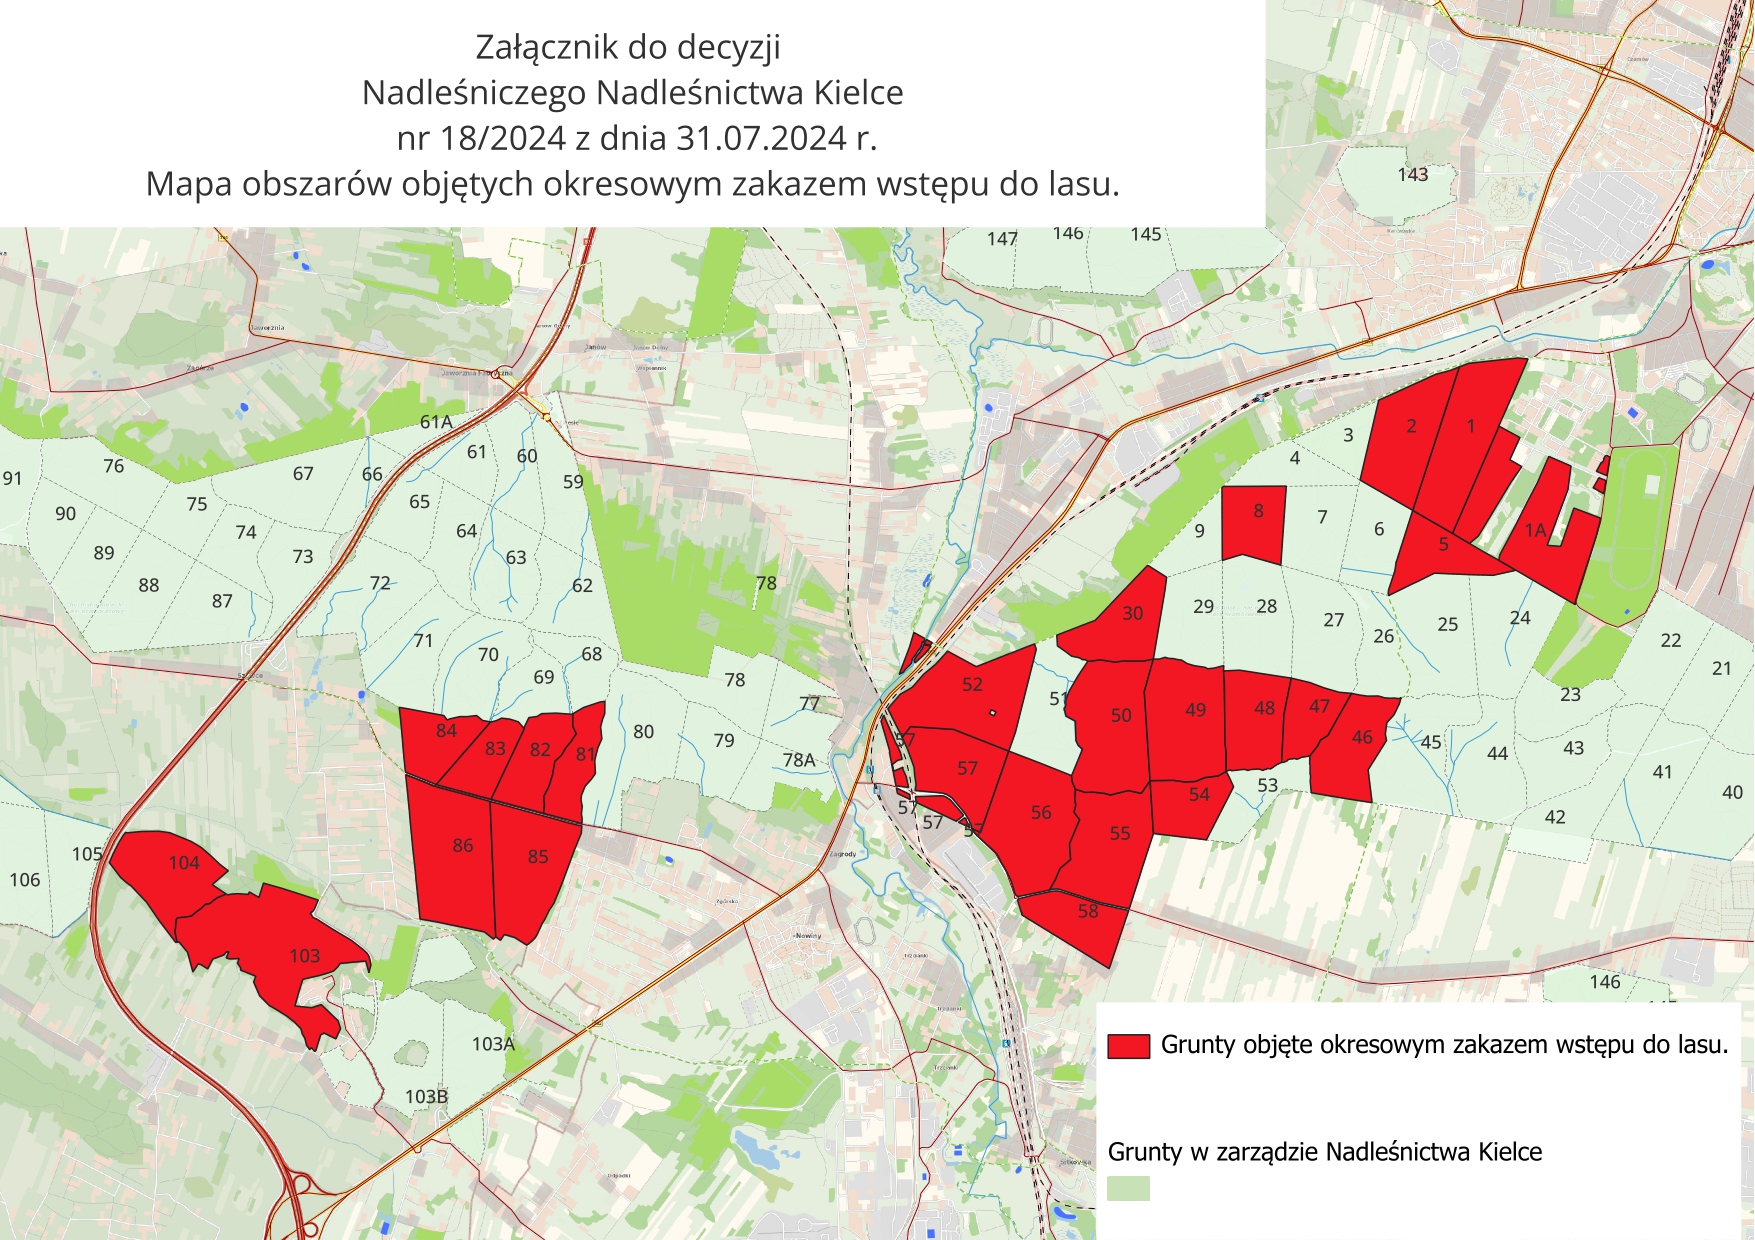 Okresowy zakaz wstępu do lasu przedłużony - Radio Kielce